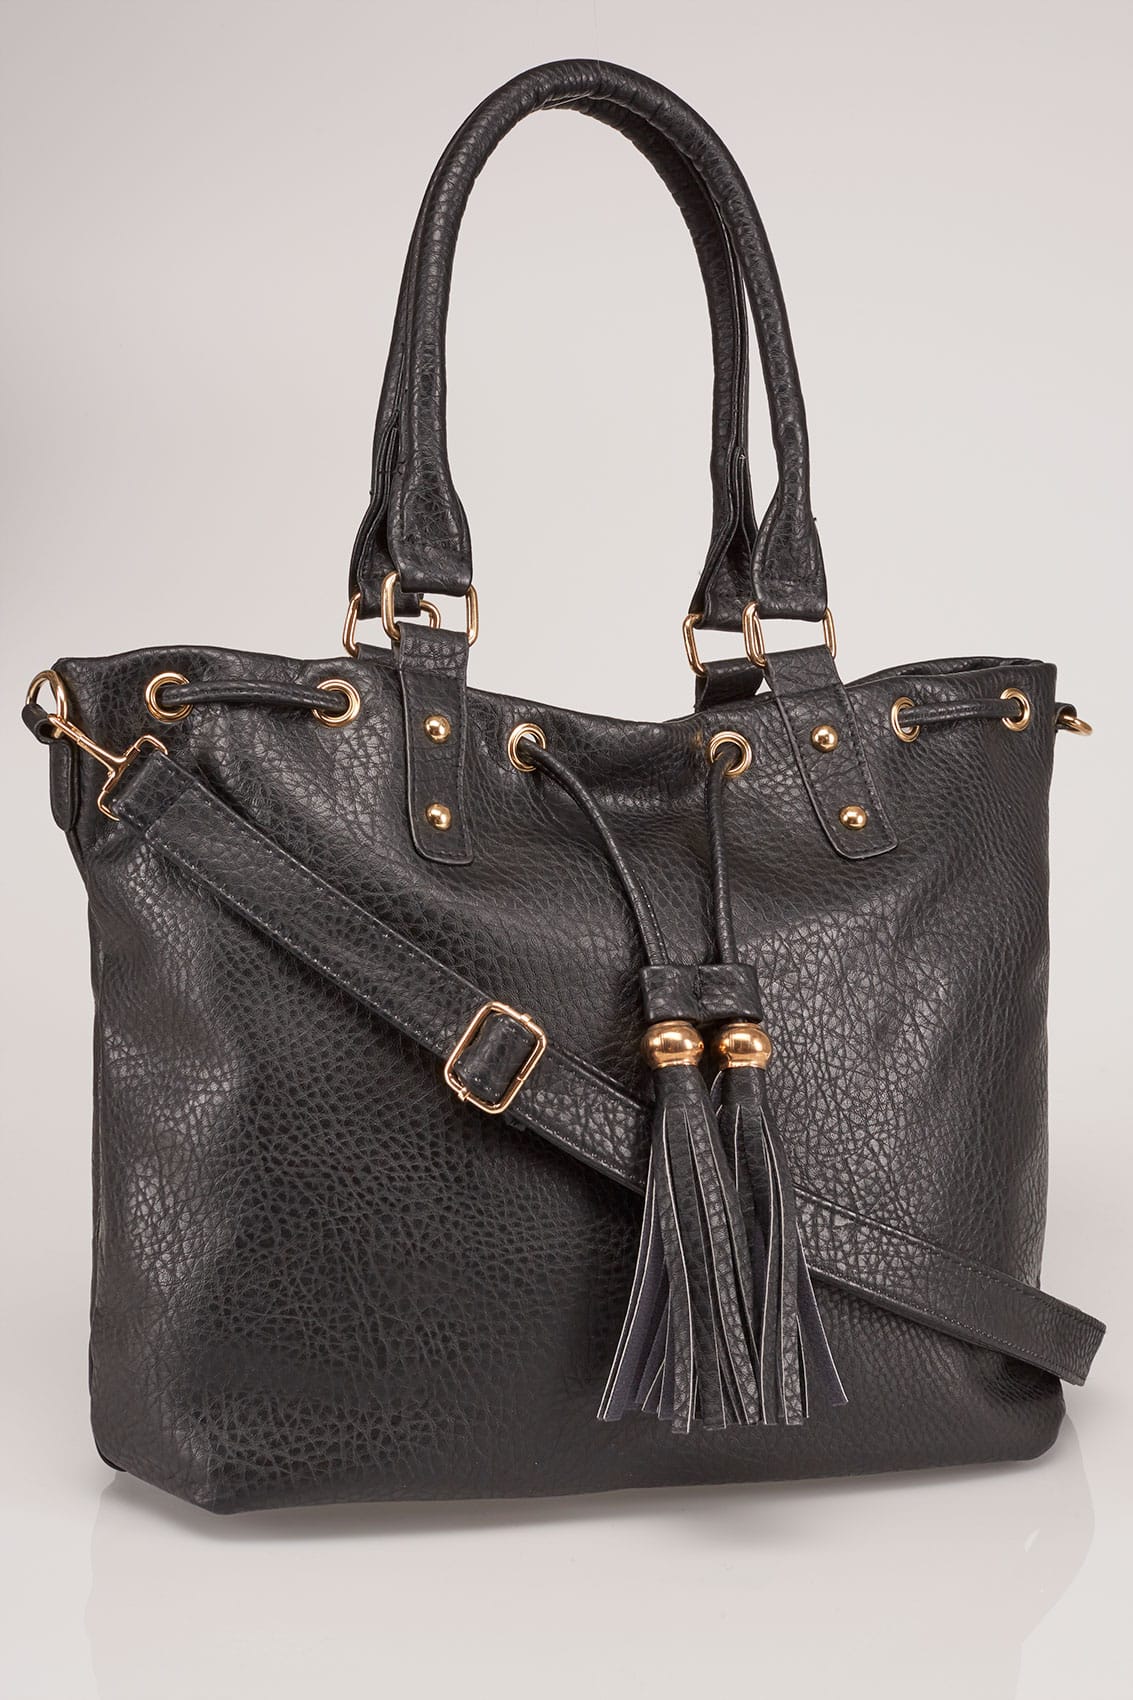 Black Drawstring Shoulder Bag With Tassels